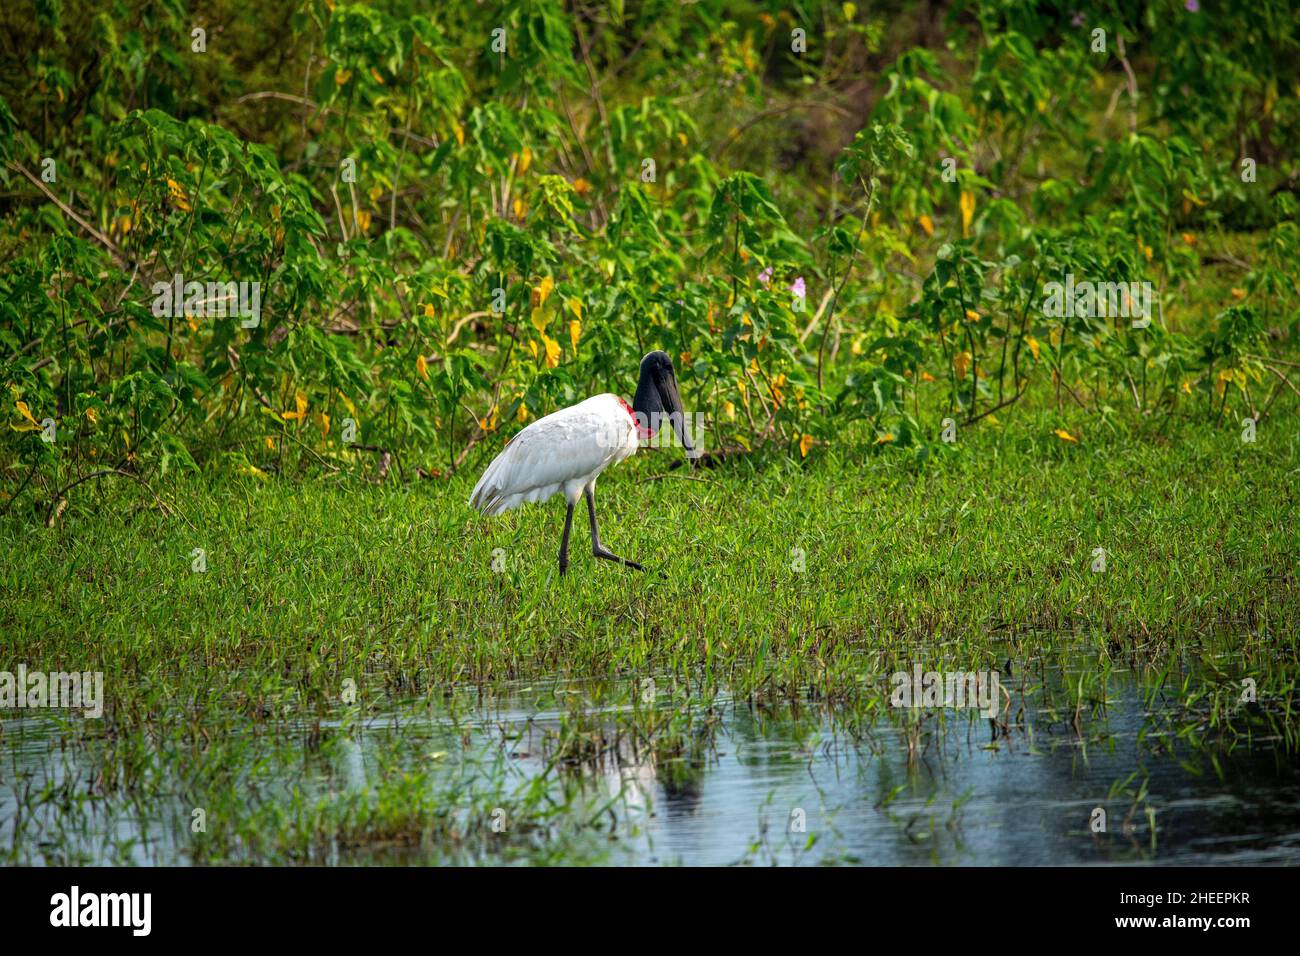 Tuiuiu, l'oiseau considéré comme le symbole du Pantanal de Mato Grosso, Brésil Banque D'Images